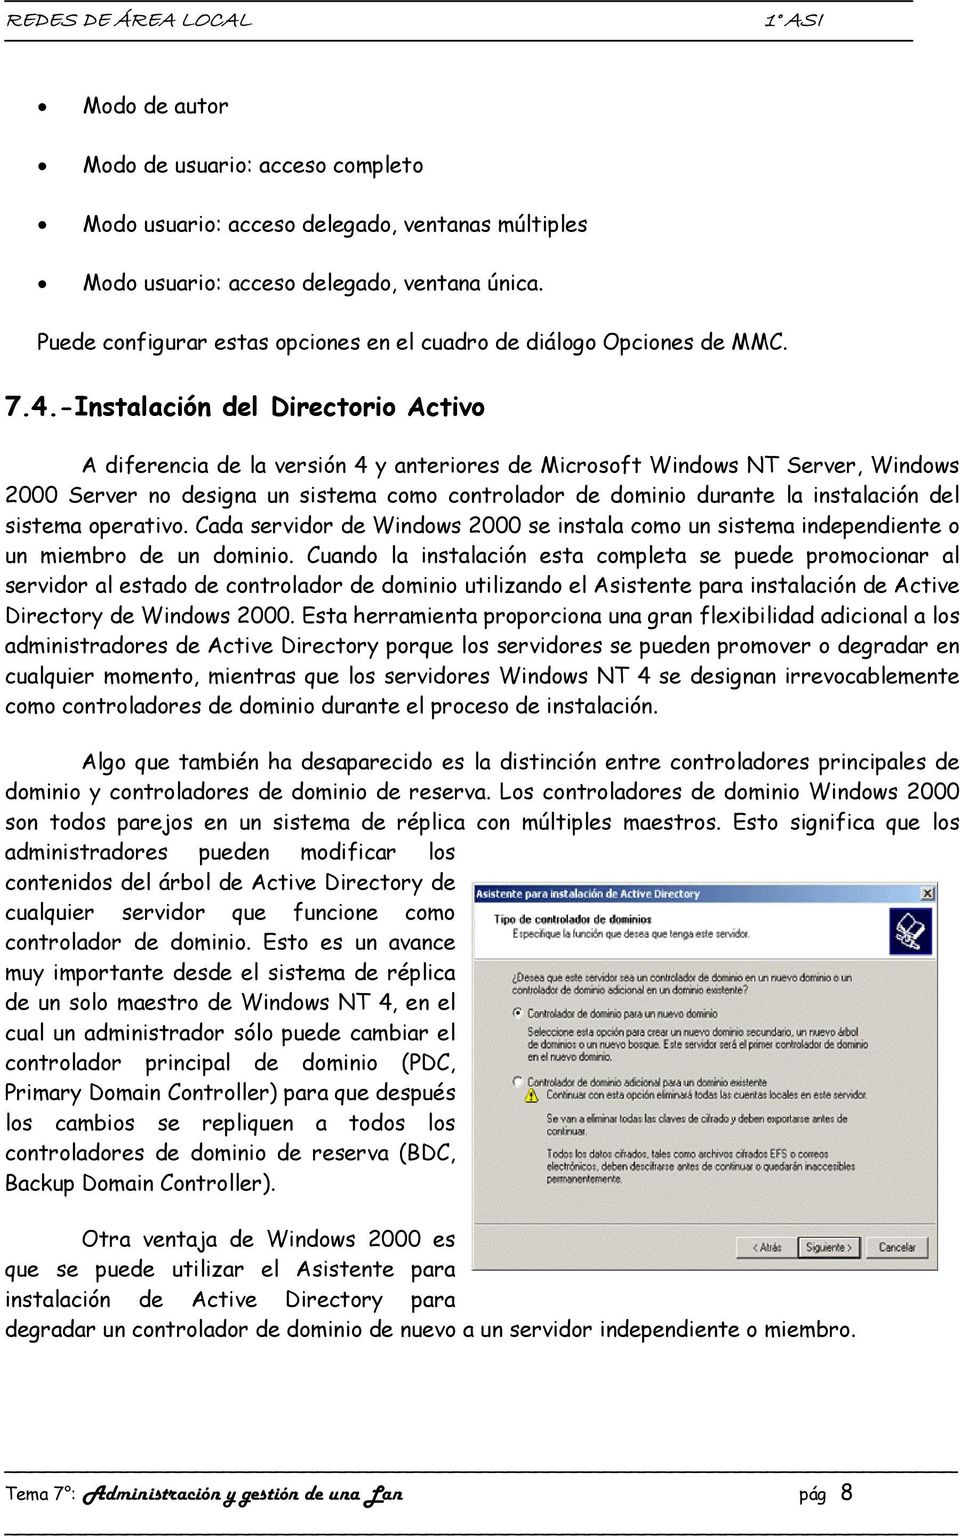 -Instalación del Directorio Activo A diferencia de la versión 4 y anteriores de Microsoft Windows NT Server, Windows 2000 Server no designa un sistema como controlador de dominio durante la